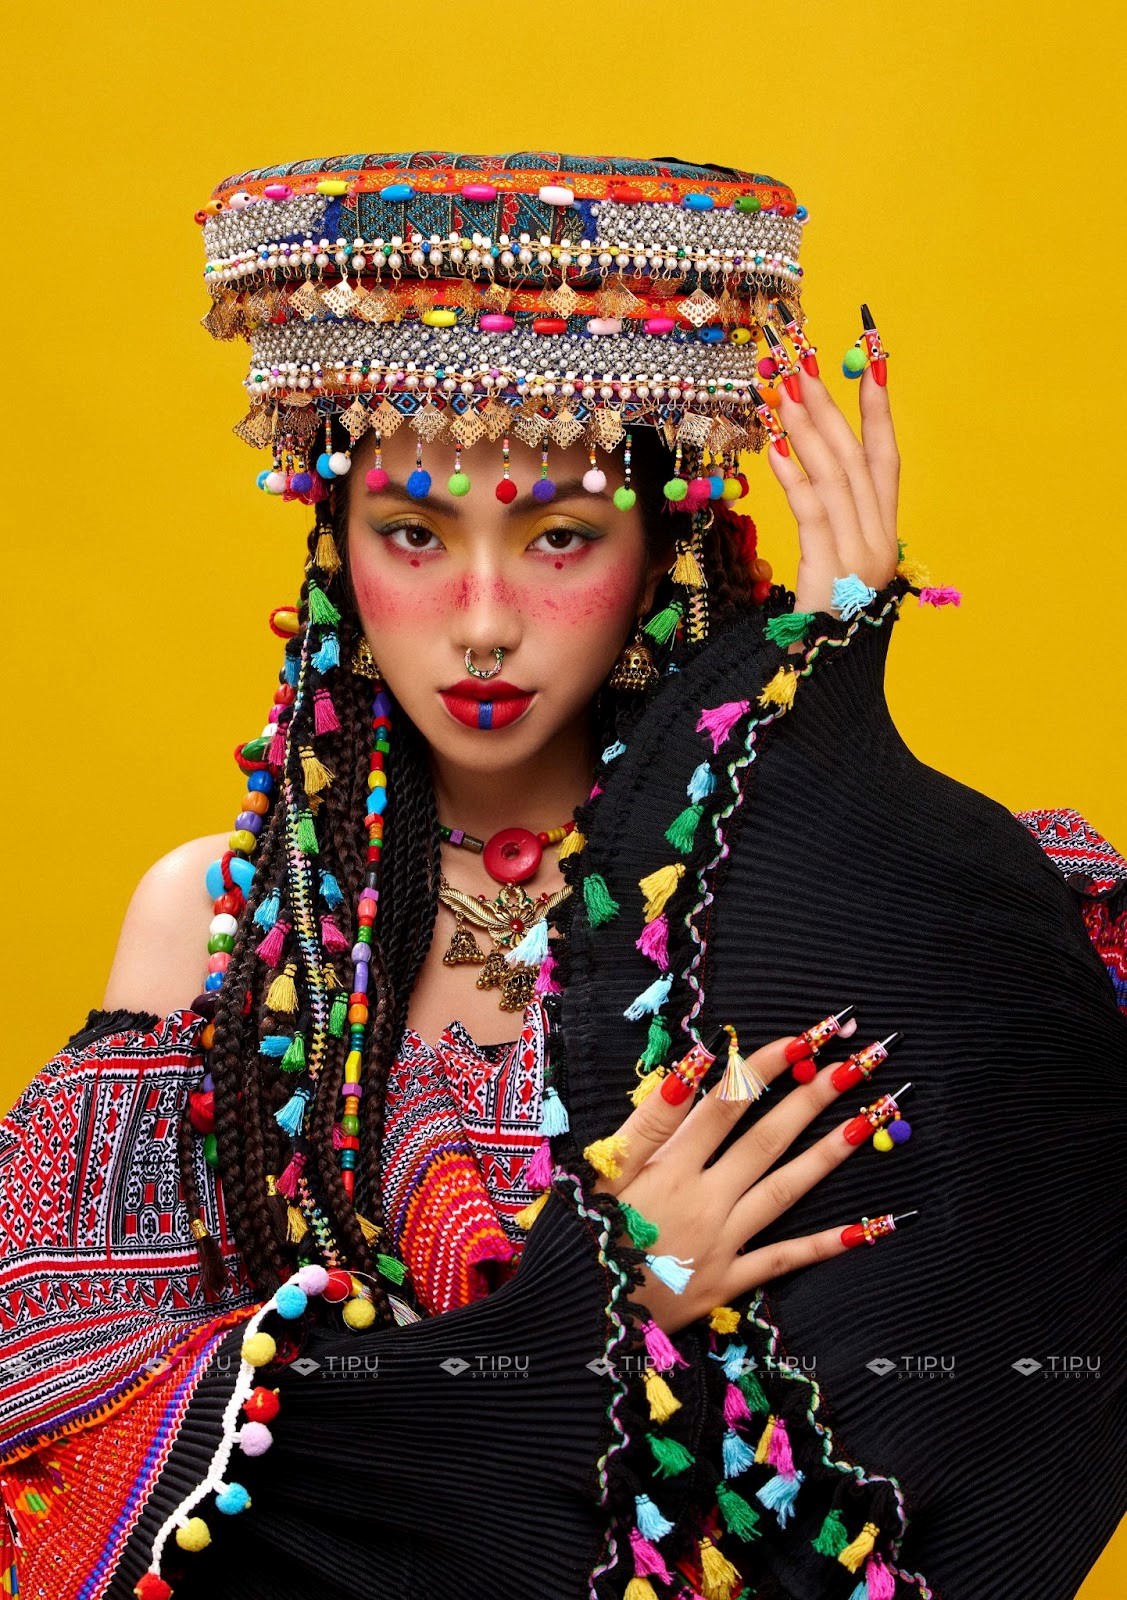 “Tân - Sắc - Tộc” Makeup Look Collection - Tipu Studio tôn vinh bản sắc văn hoá dân tộc-4